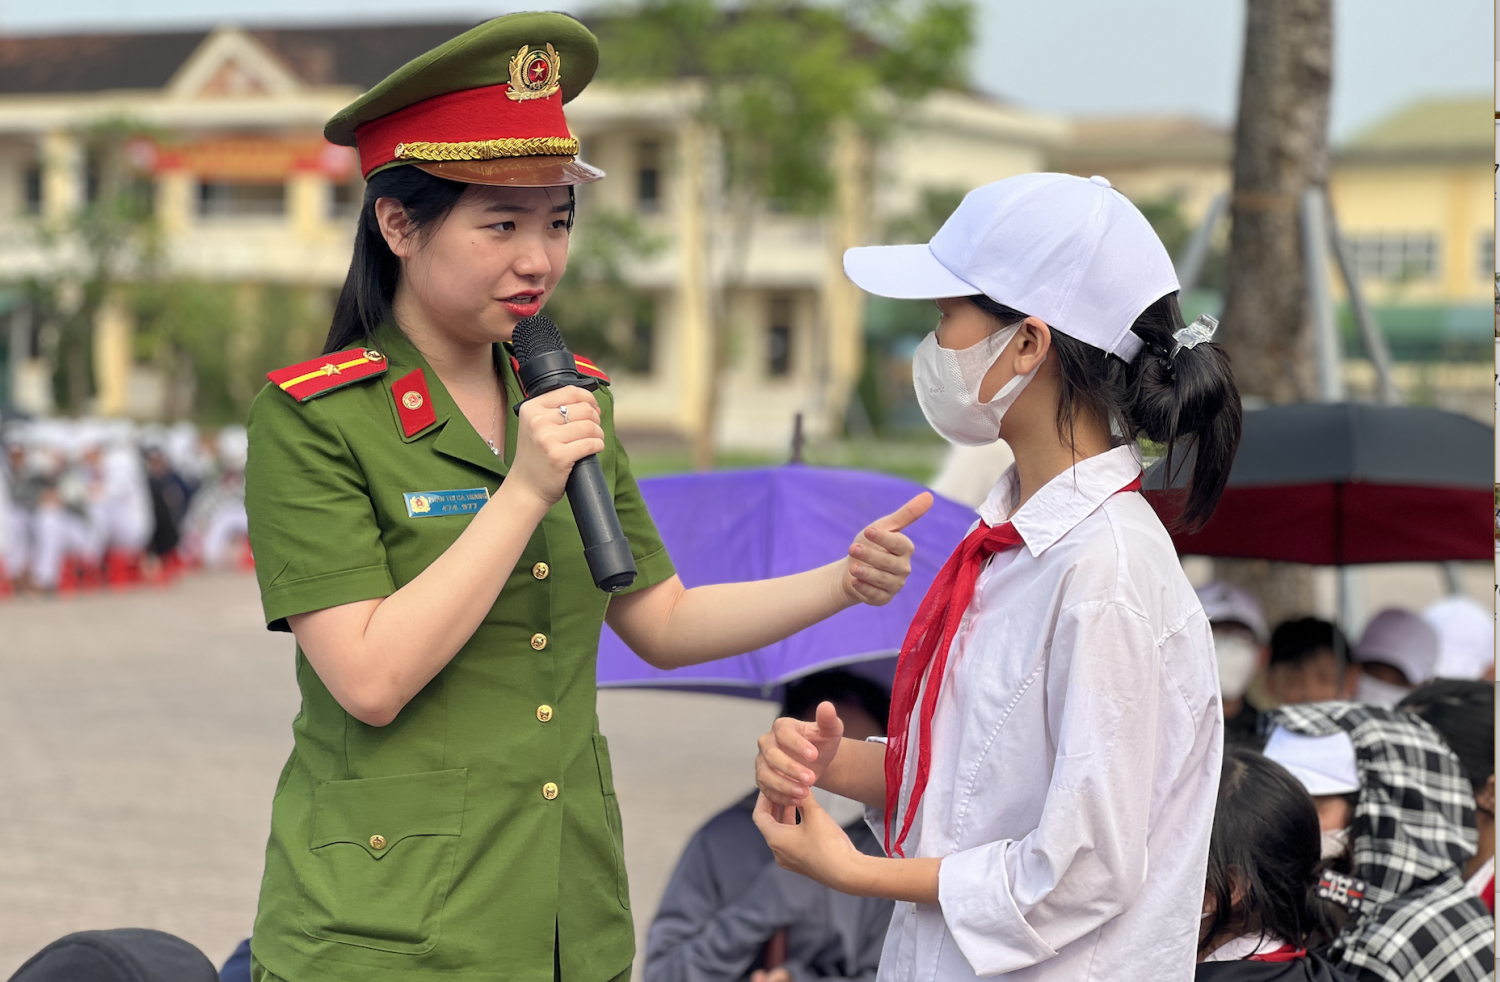 Trường THCS Phan Huy Chú tổ chức buổi tuyên truyền phòng chống đuối nước, bạo lực học đường, xâm hại trẻ em và phòng chống sử dụng thuốc lá điện tử